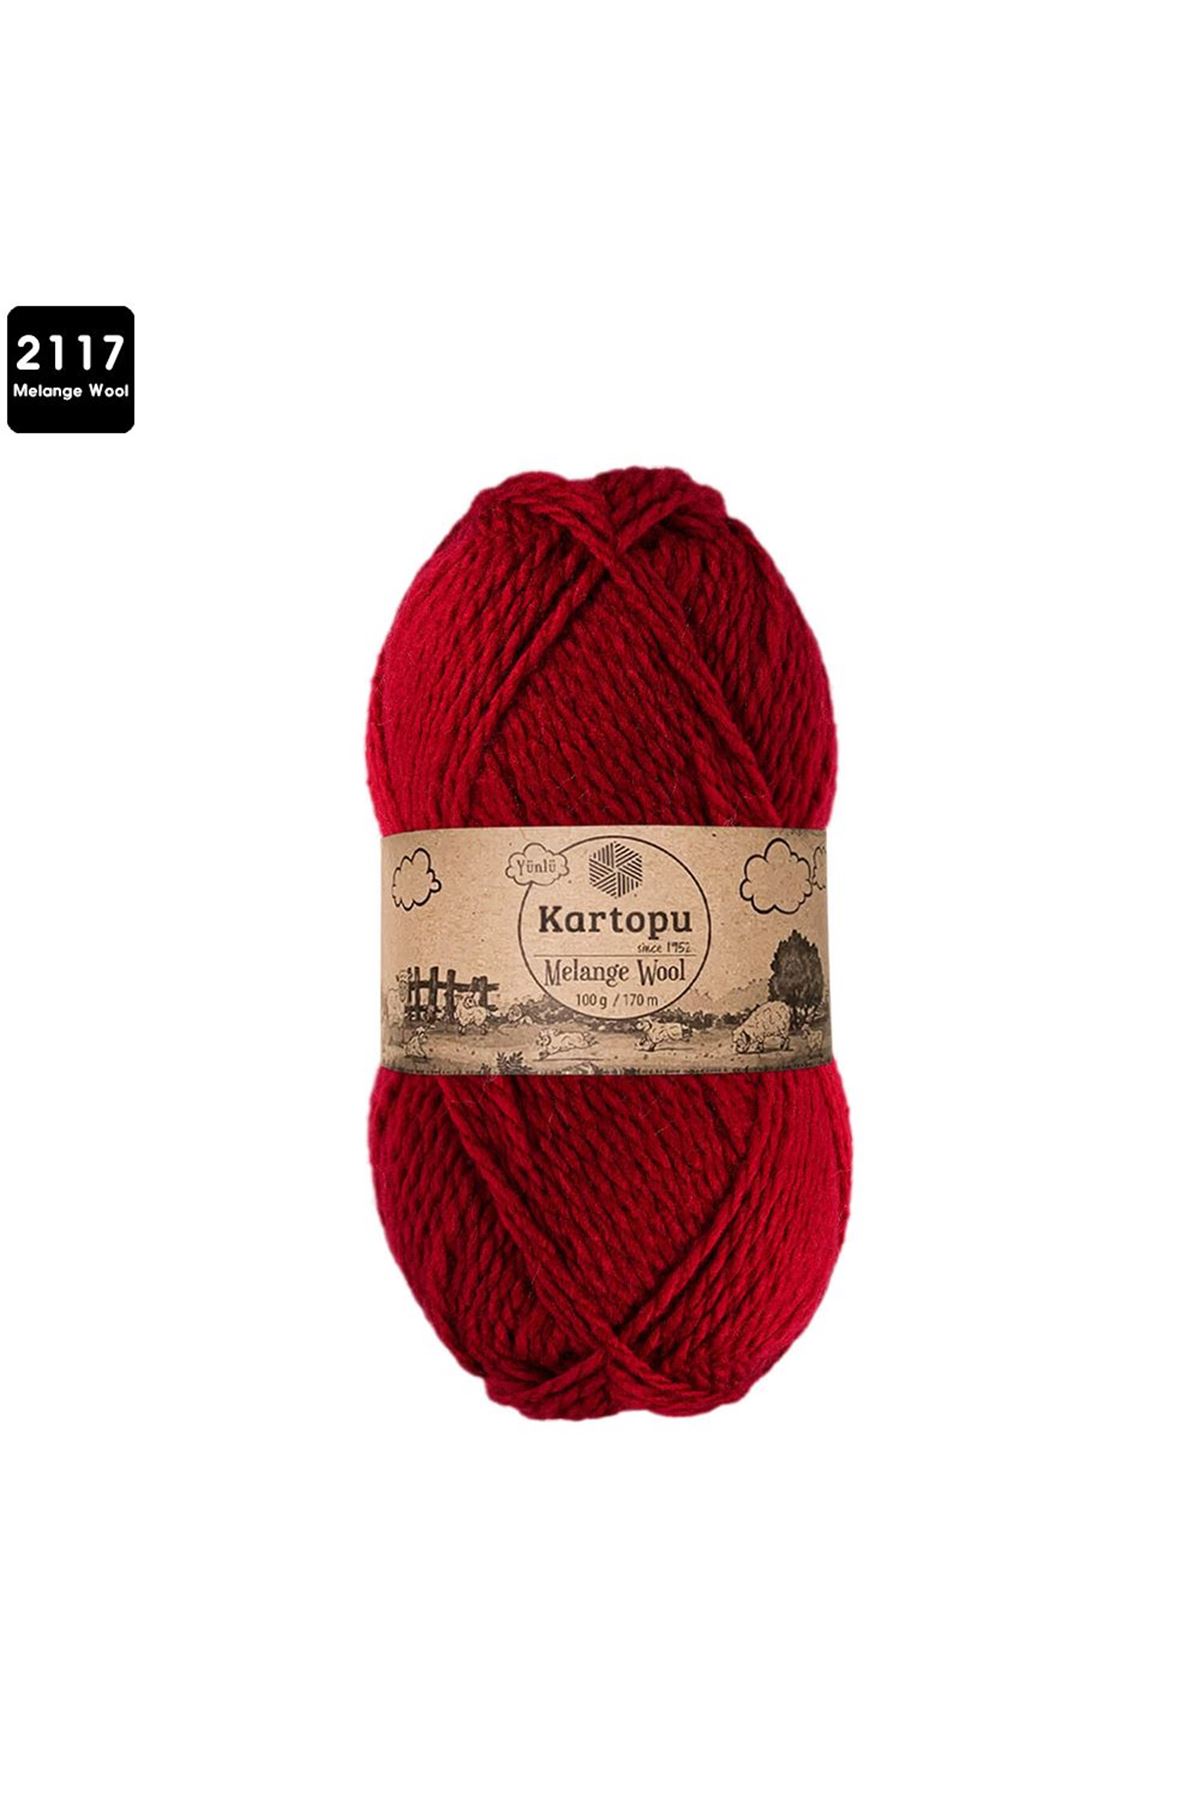 Kartopu Melange Wool Renk No:2117